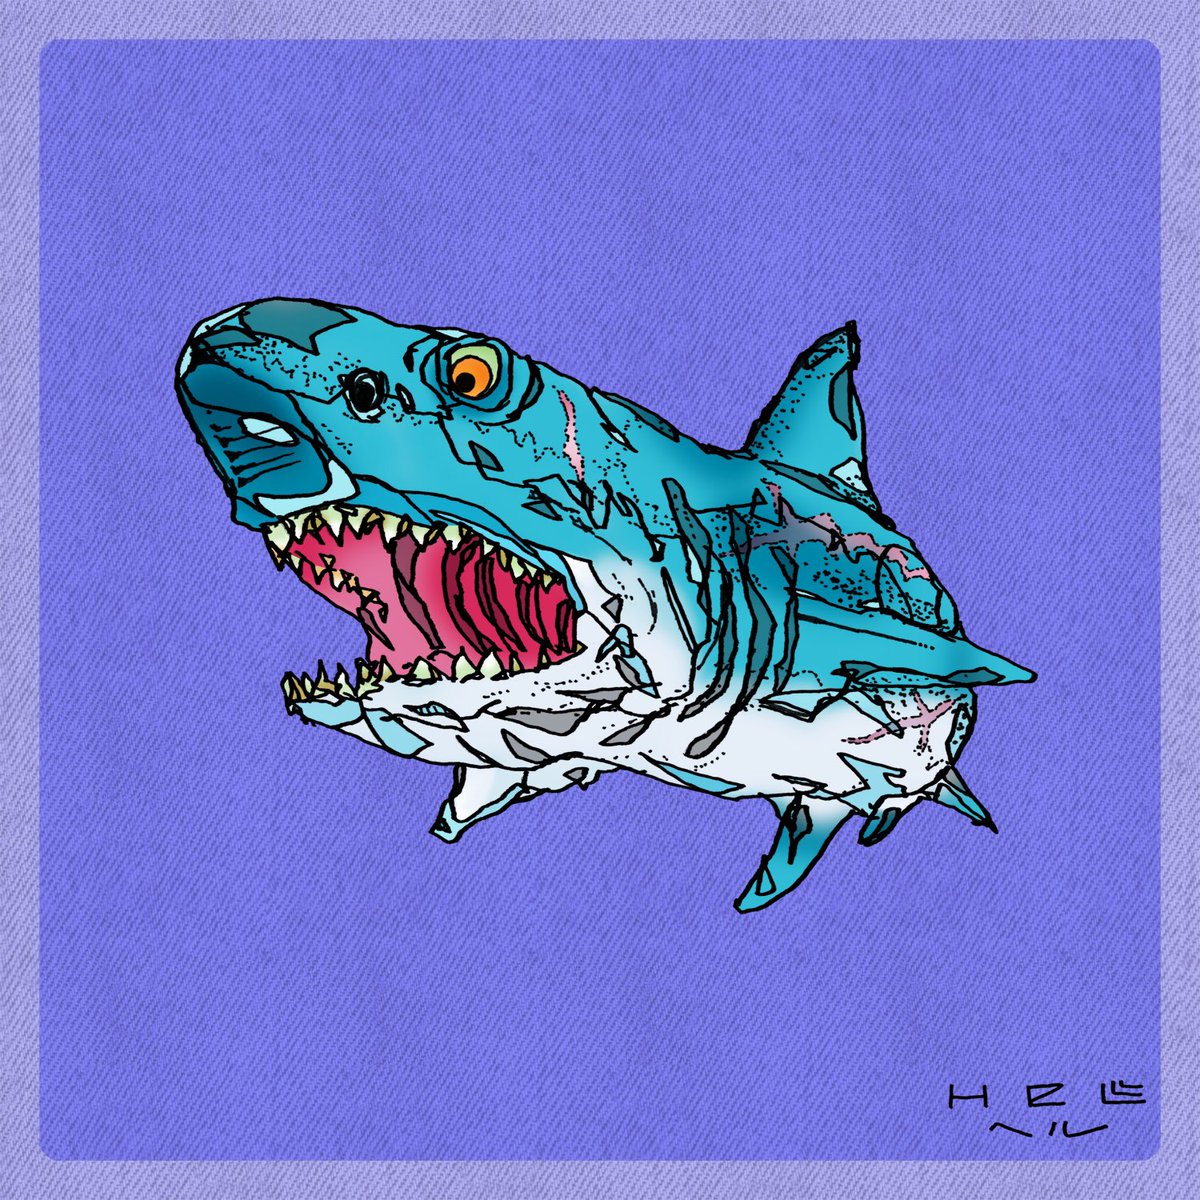 Helll ヘル サメお気に入りですか 嬉しい ボク的にもサメさんカッコいいのでオススメデス